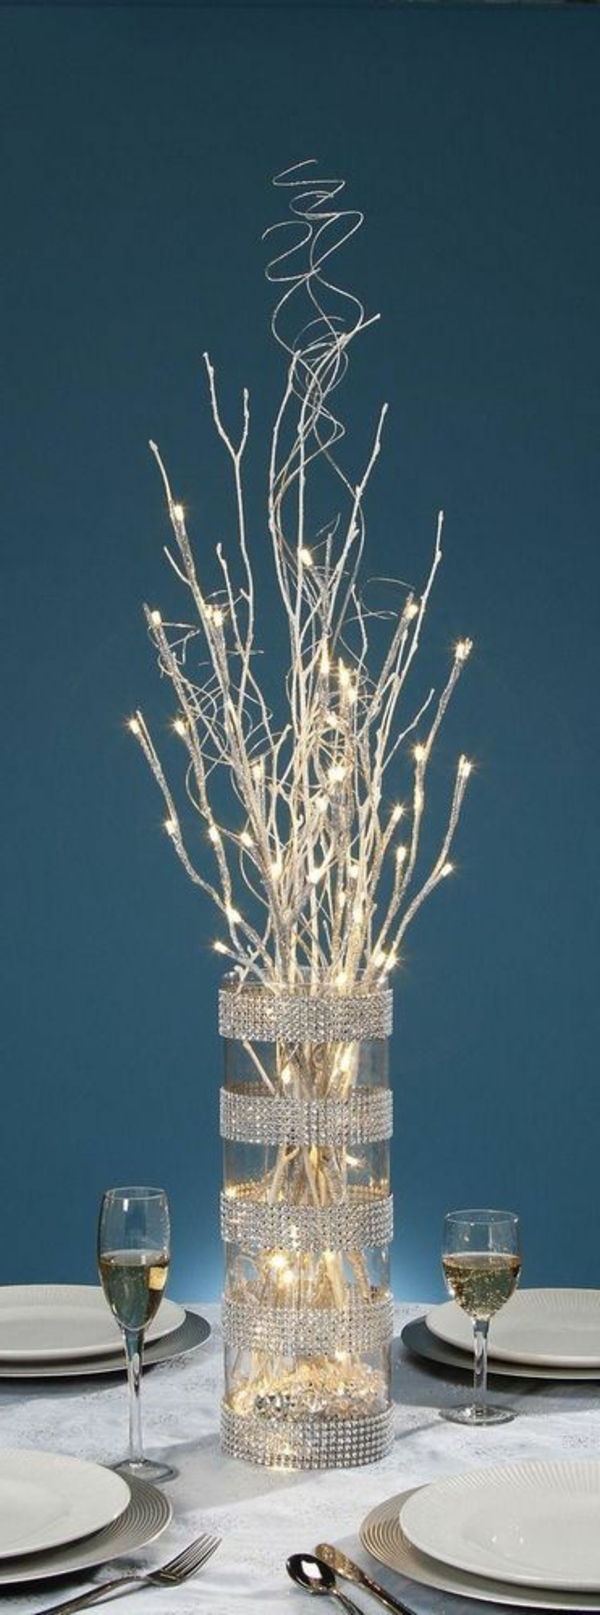 bela božična dekoracija - vaza z belimi umetnimi vejami v njem